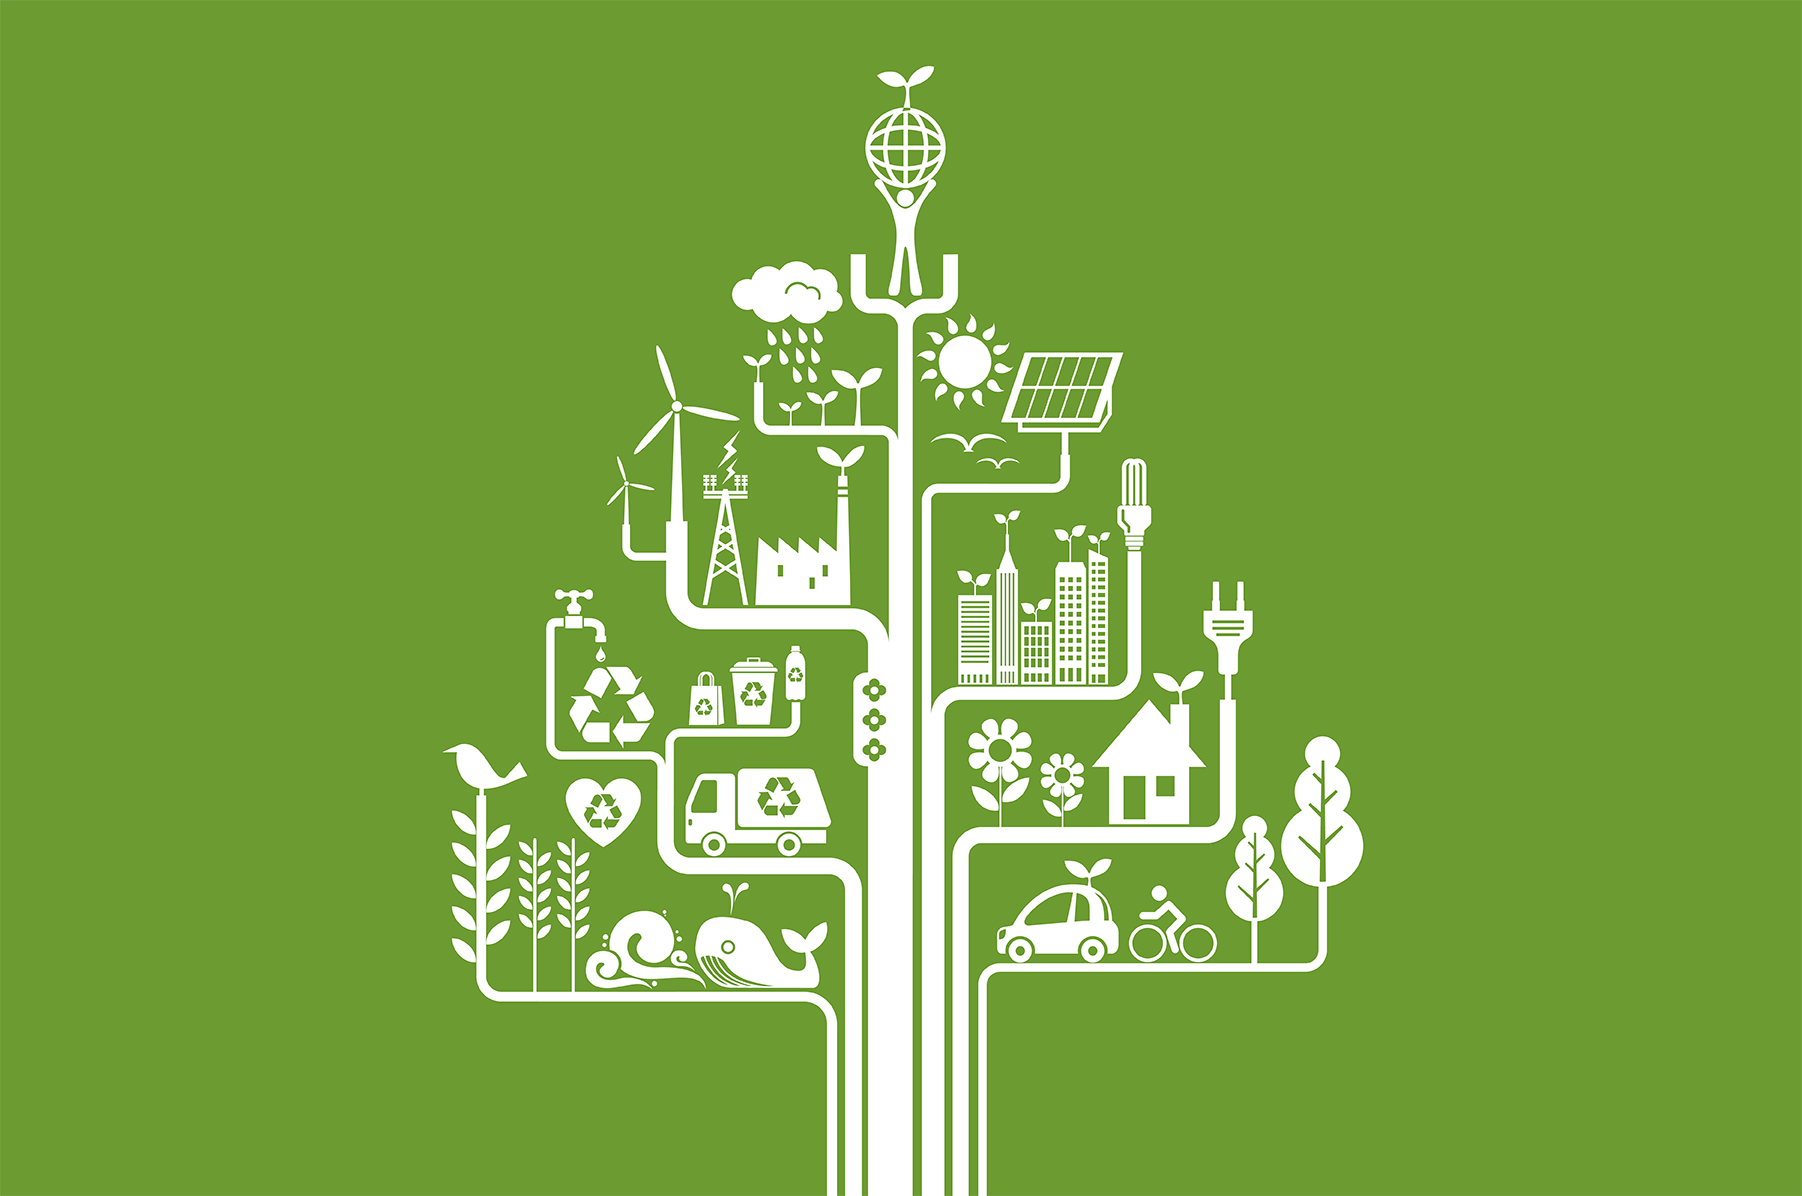 5e67f91d7a987-Blog -- Go Green Energy Efficient_Blog Image